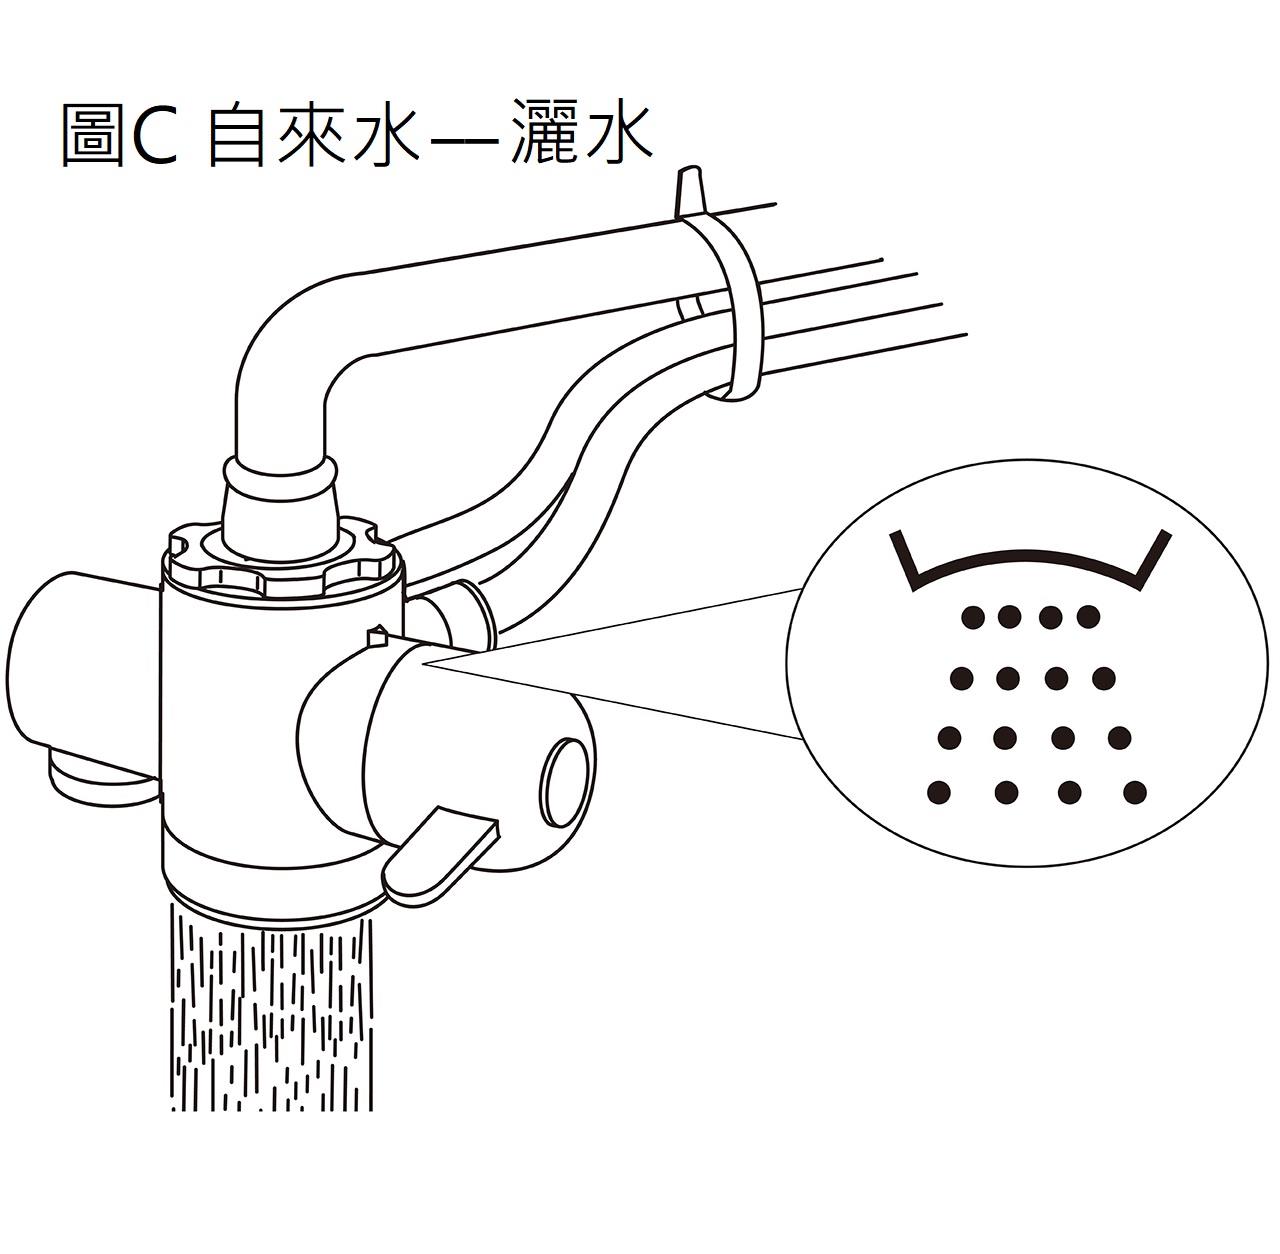 益之源淨水器 分流器安裝教學-無螺紋、直徑較大水龍頭